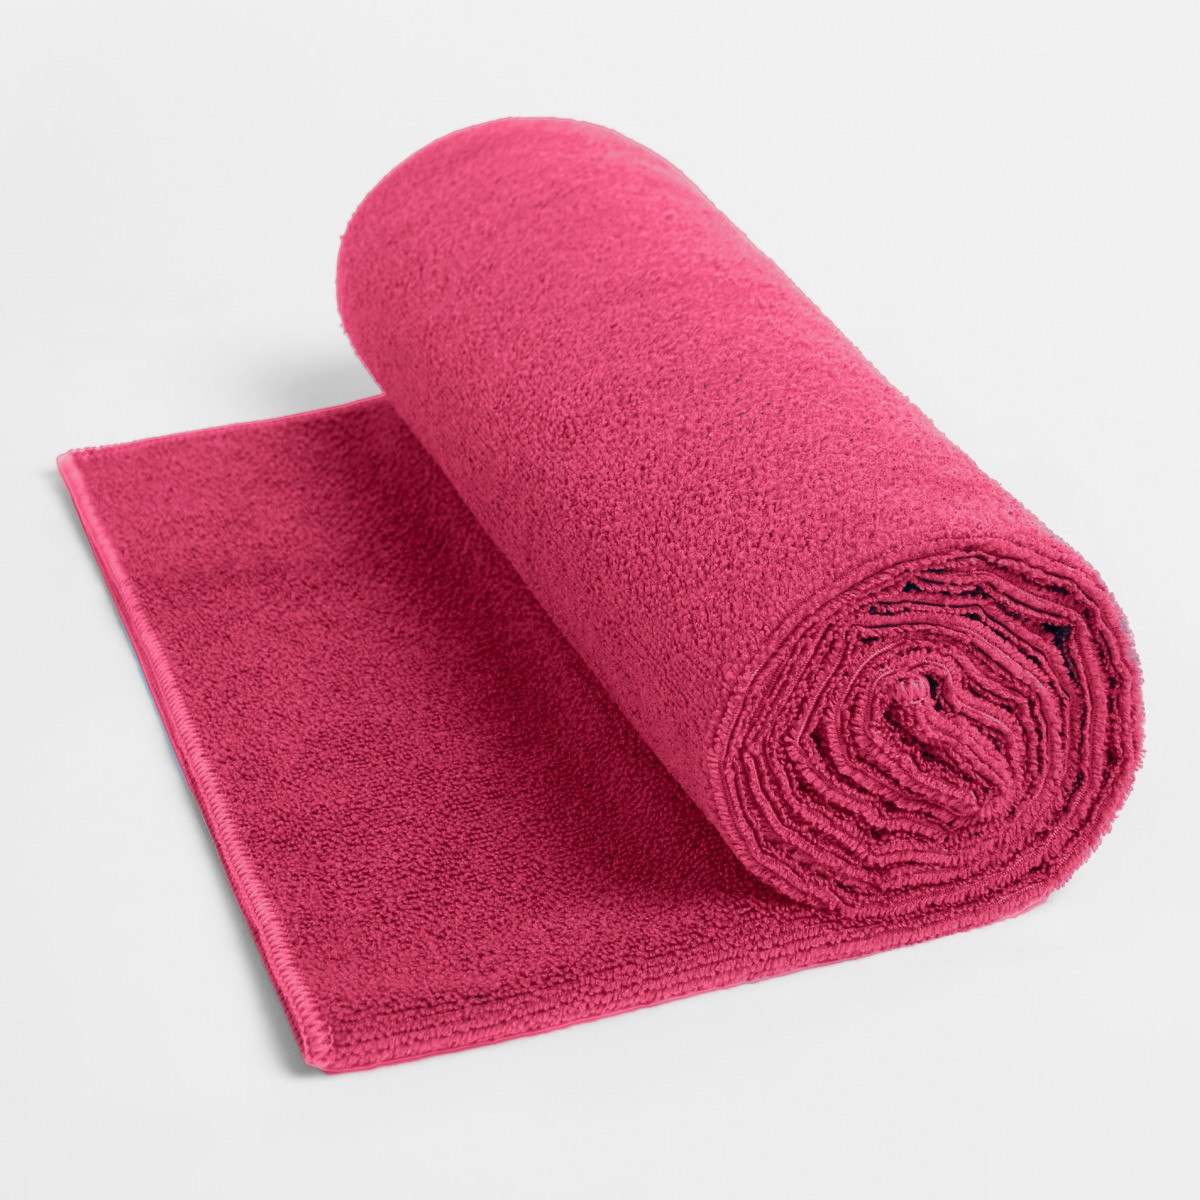 Brentfords Beach Towel - Pink>